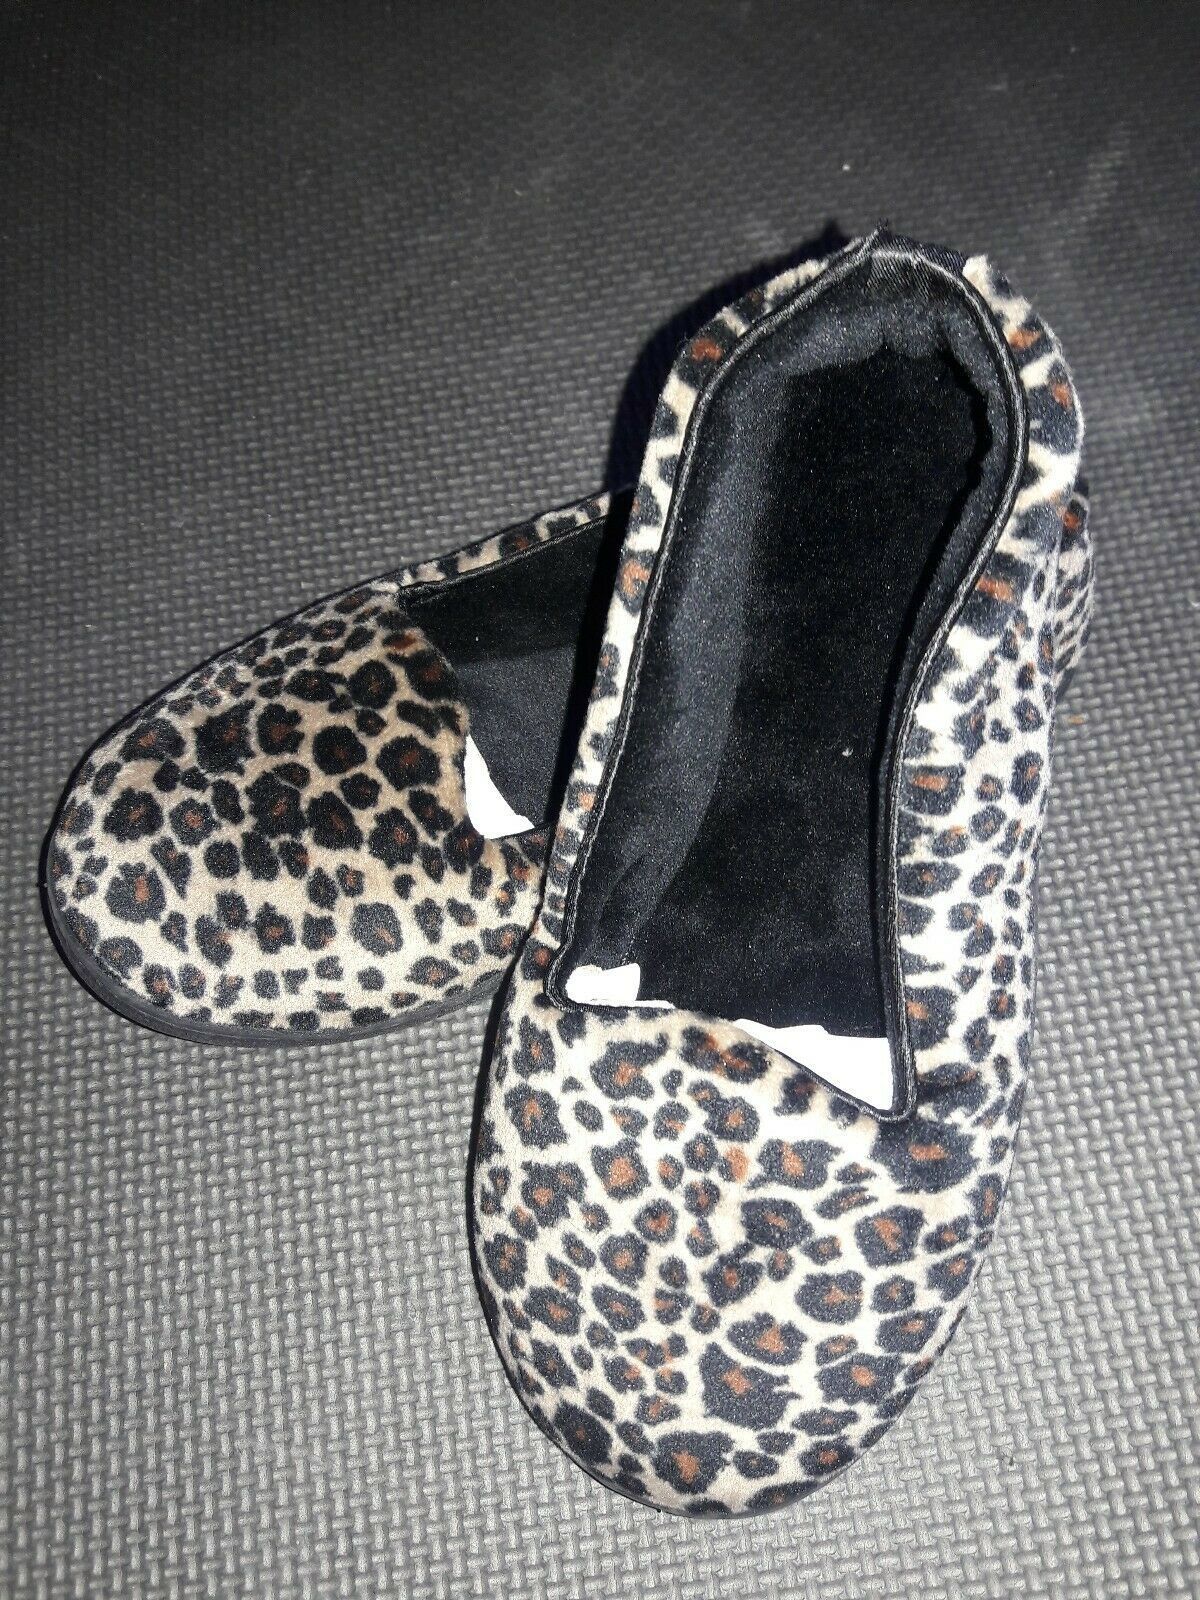 dearfoam leopard print slippers